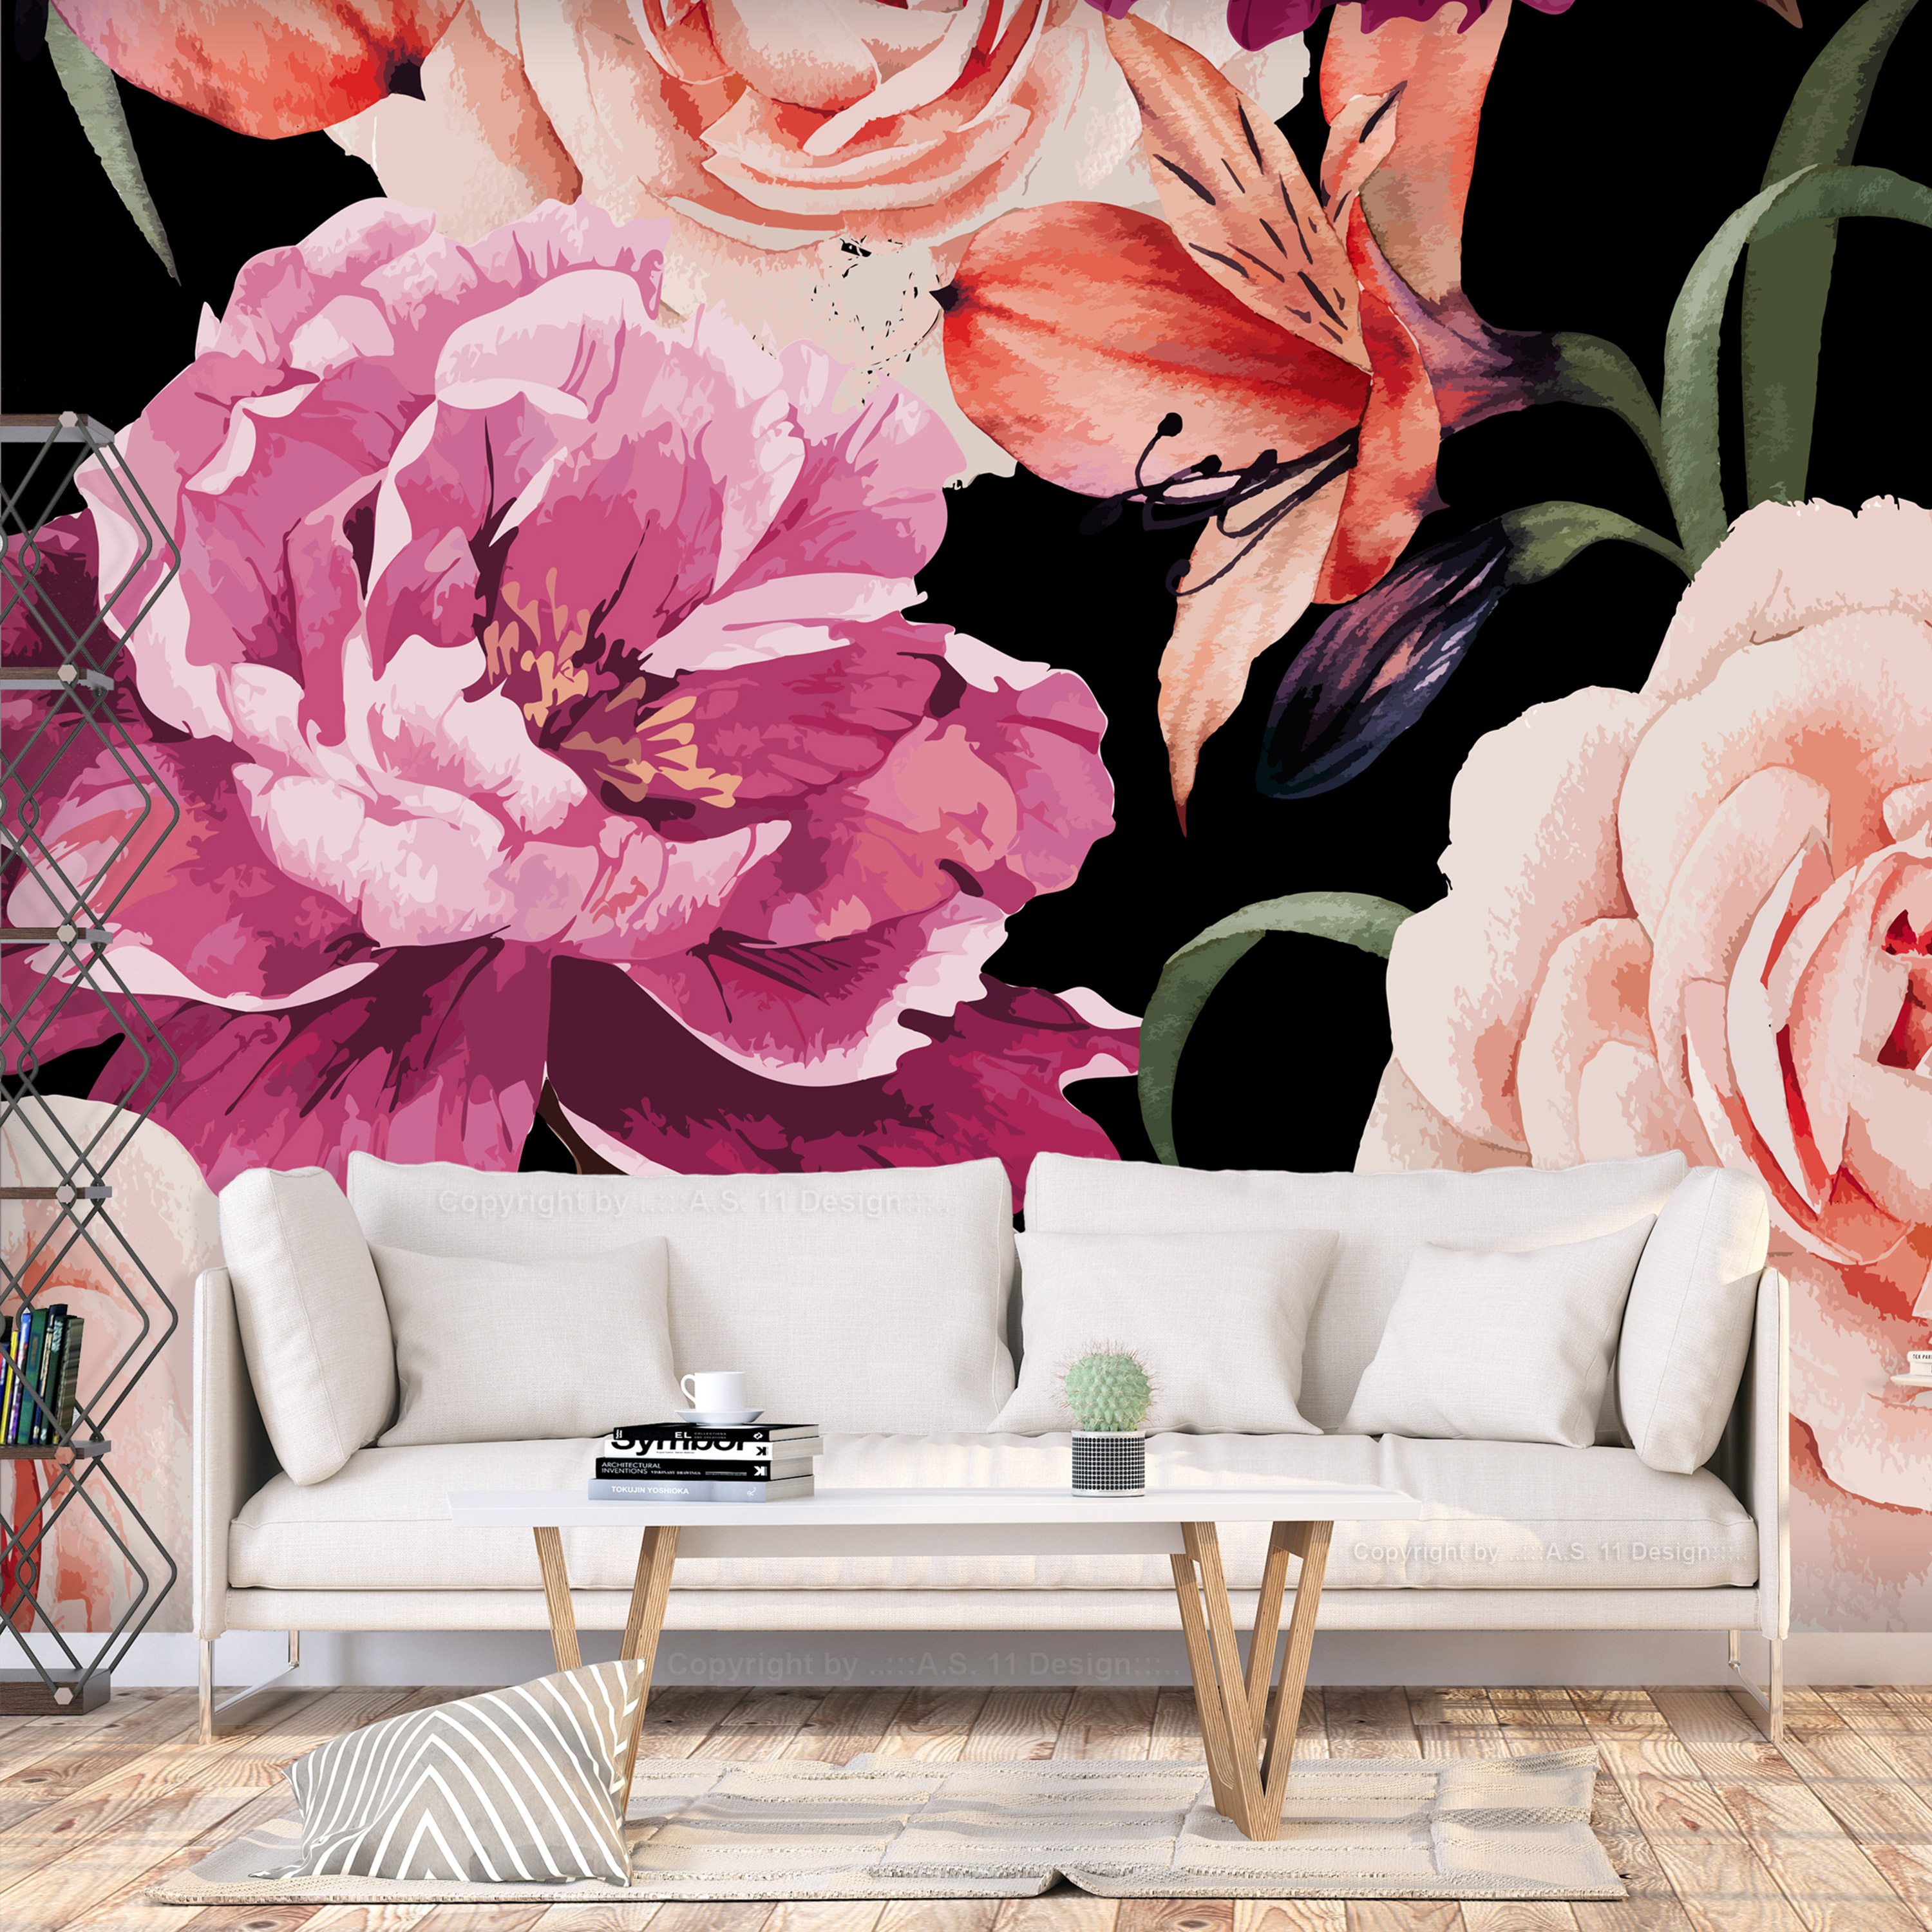 Self-adhesive Wallpaper - Roses of Love - 98x70